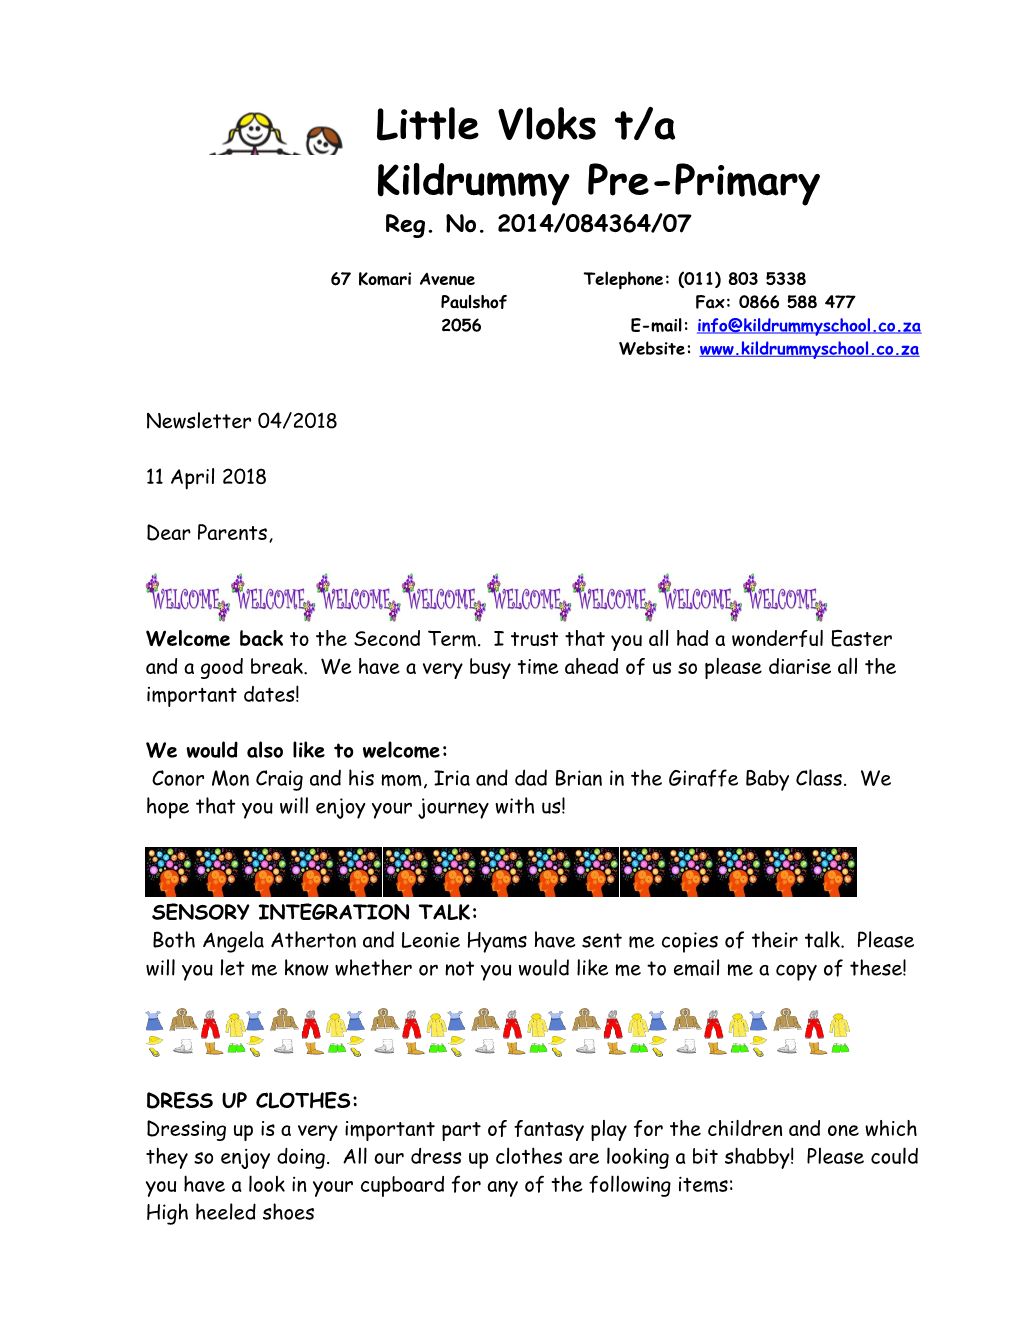 Kildrummy Pre-Primary